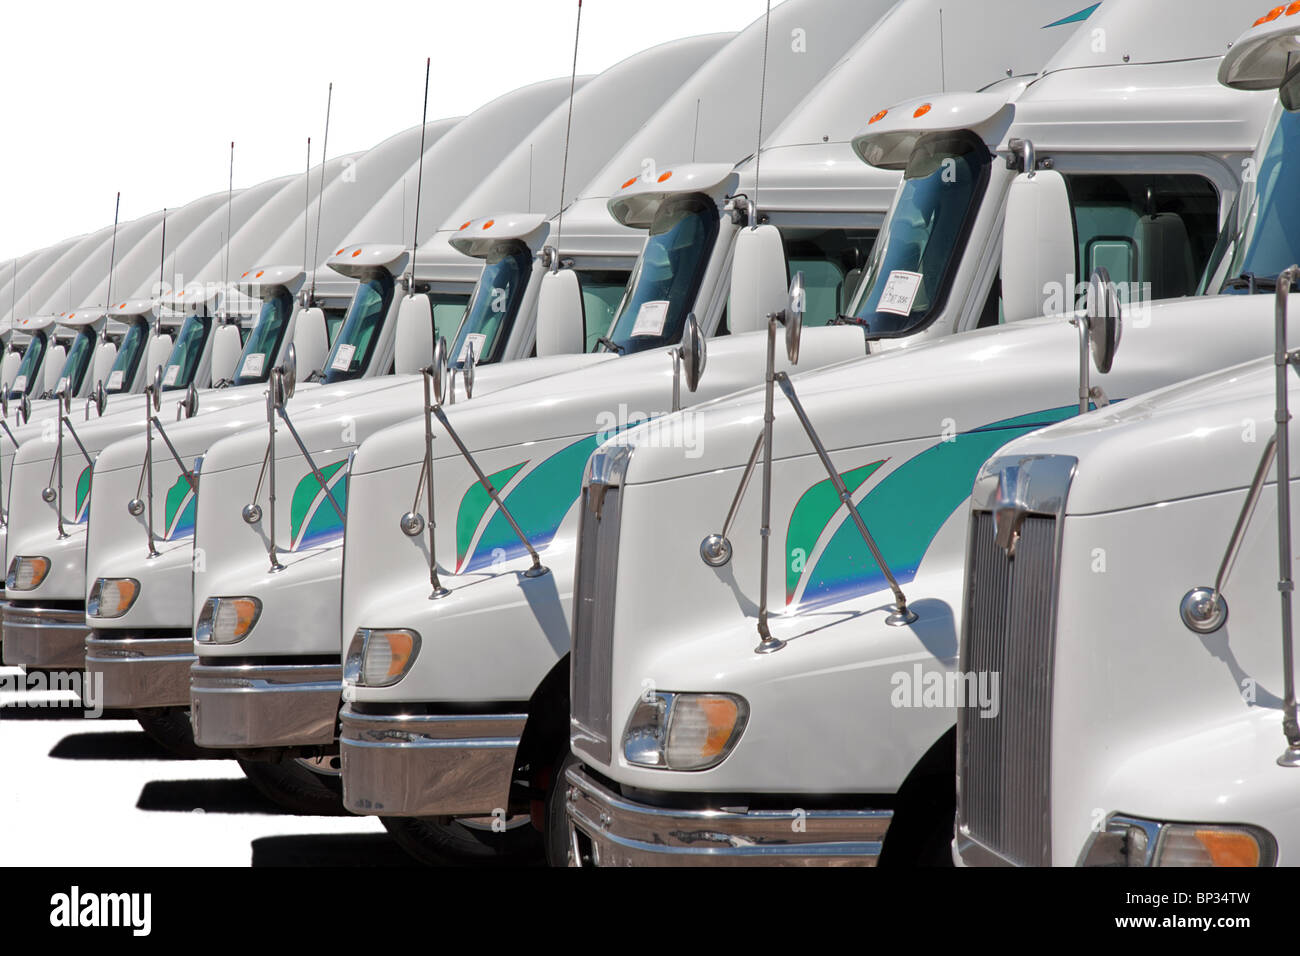 Semi Truck fleet isolated on white (255, 255, 255) Stock Photo